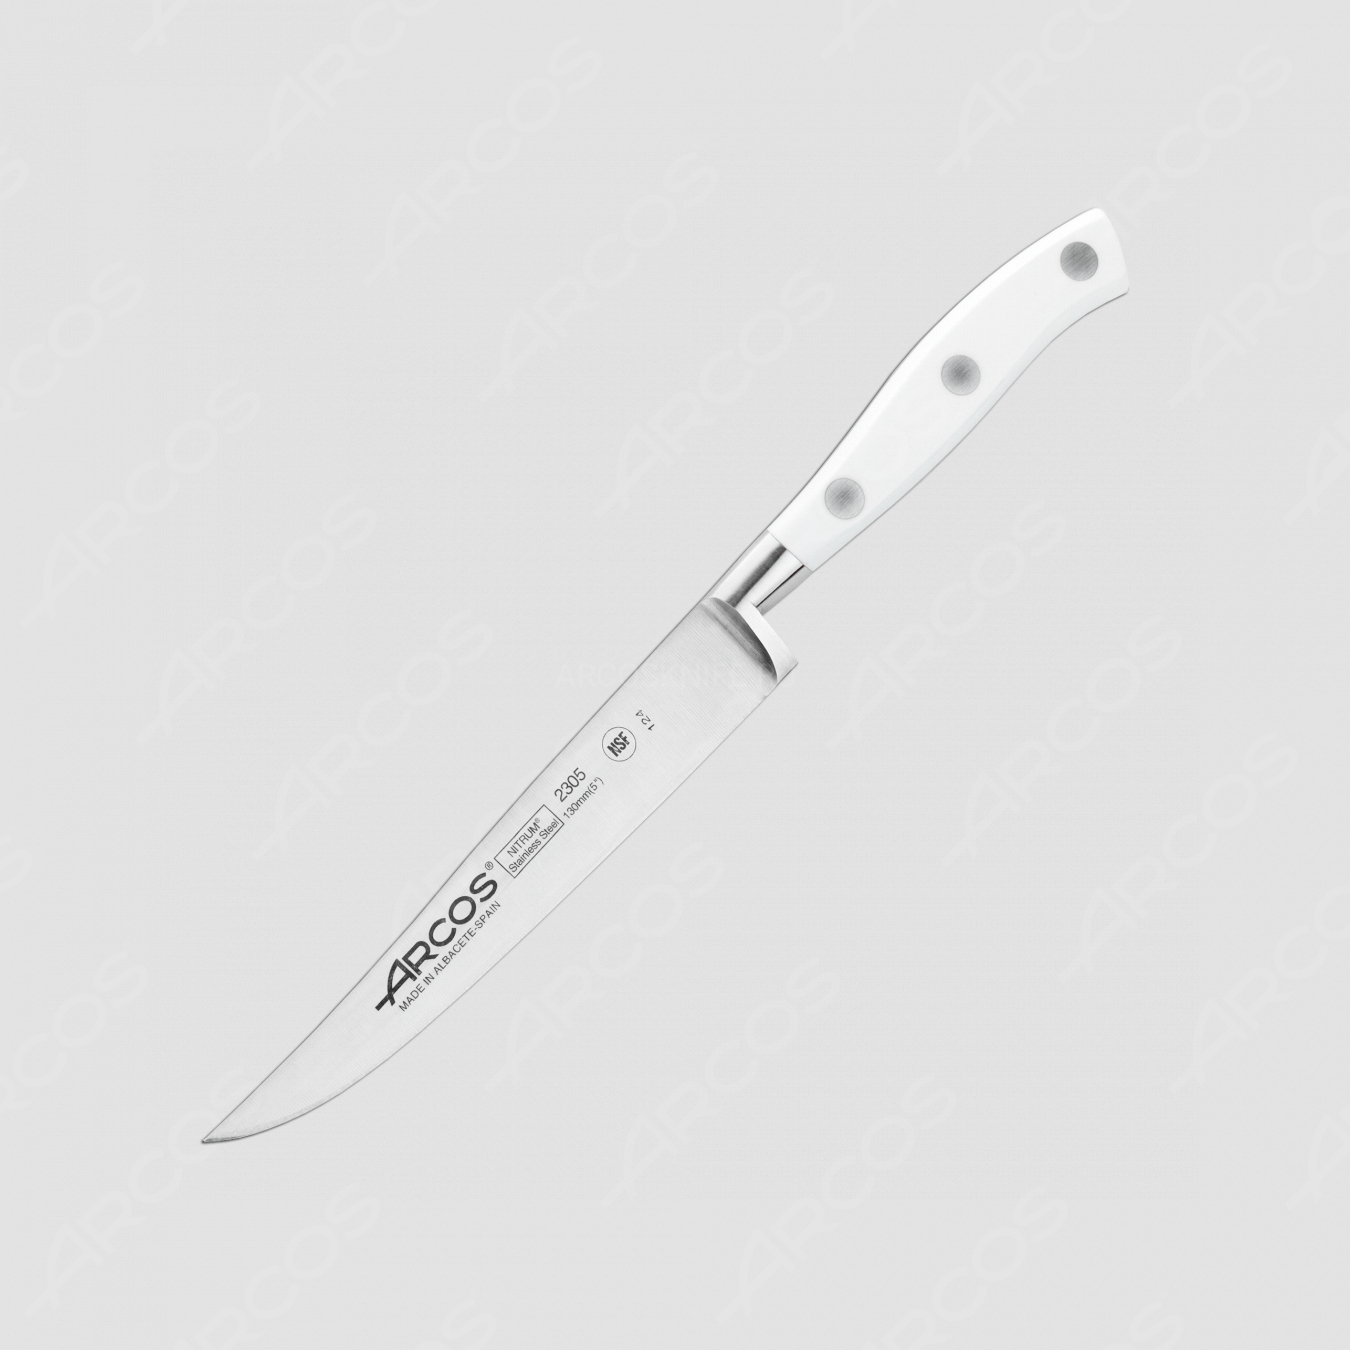 Нож кухонный для стейка 13 см, серия Riviera Blanca, ARCOS, Испания